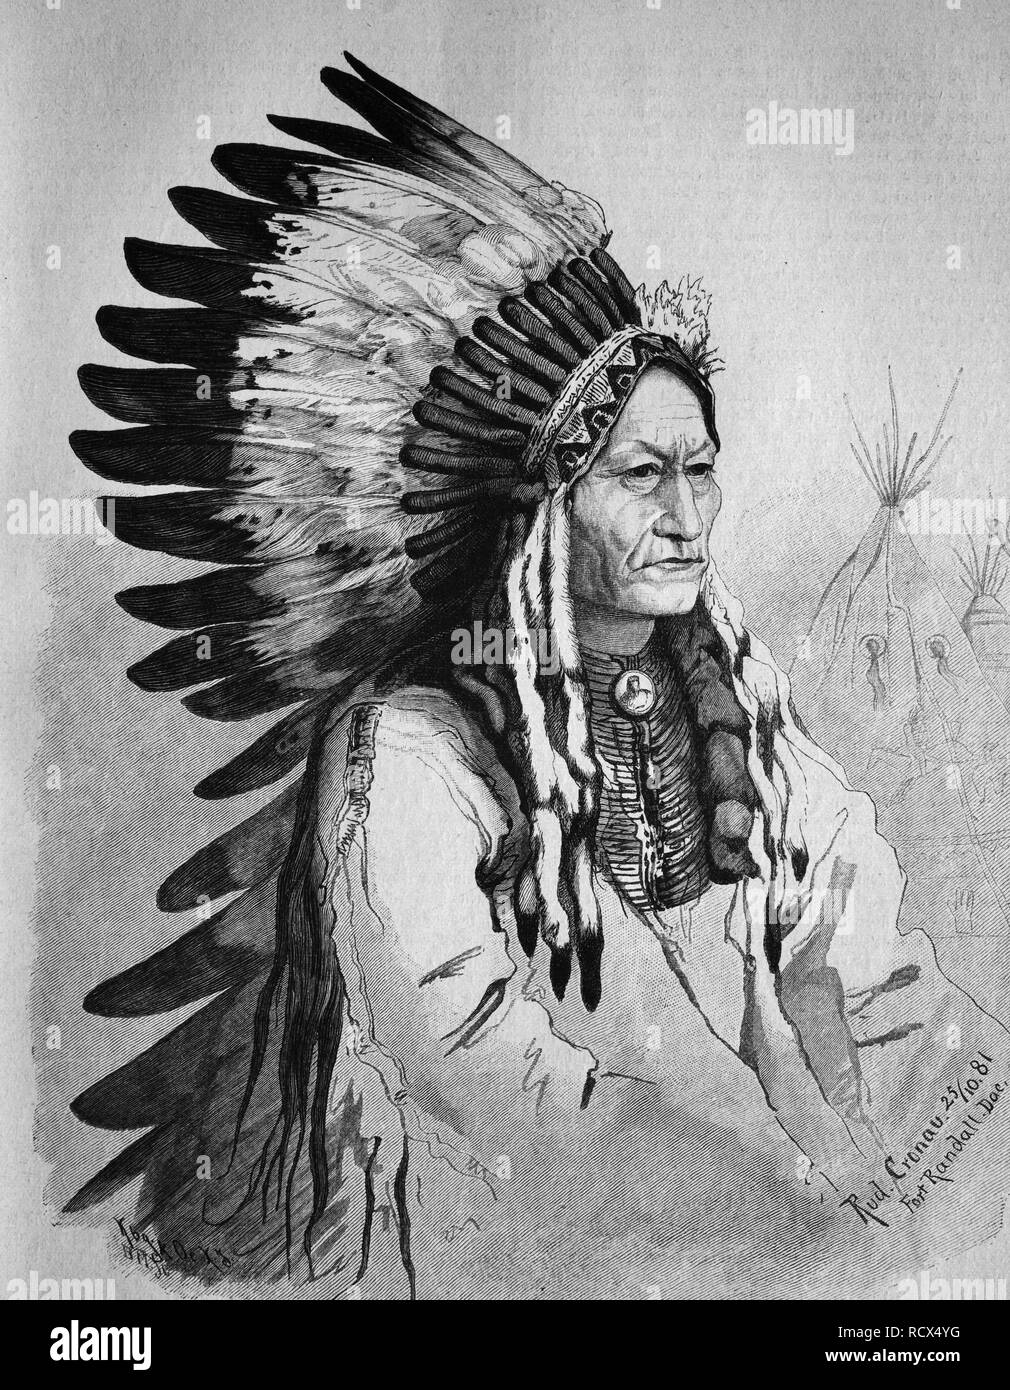 Sitting Bull, de 1831 à 1890, l'un des dirigeants au cours du dernier mouvement de libération des Américains autochtones 1866-1876 Banque D'Images